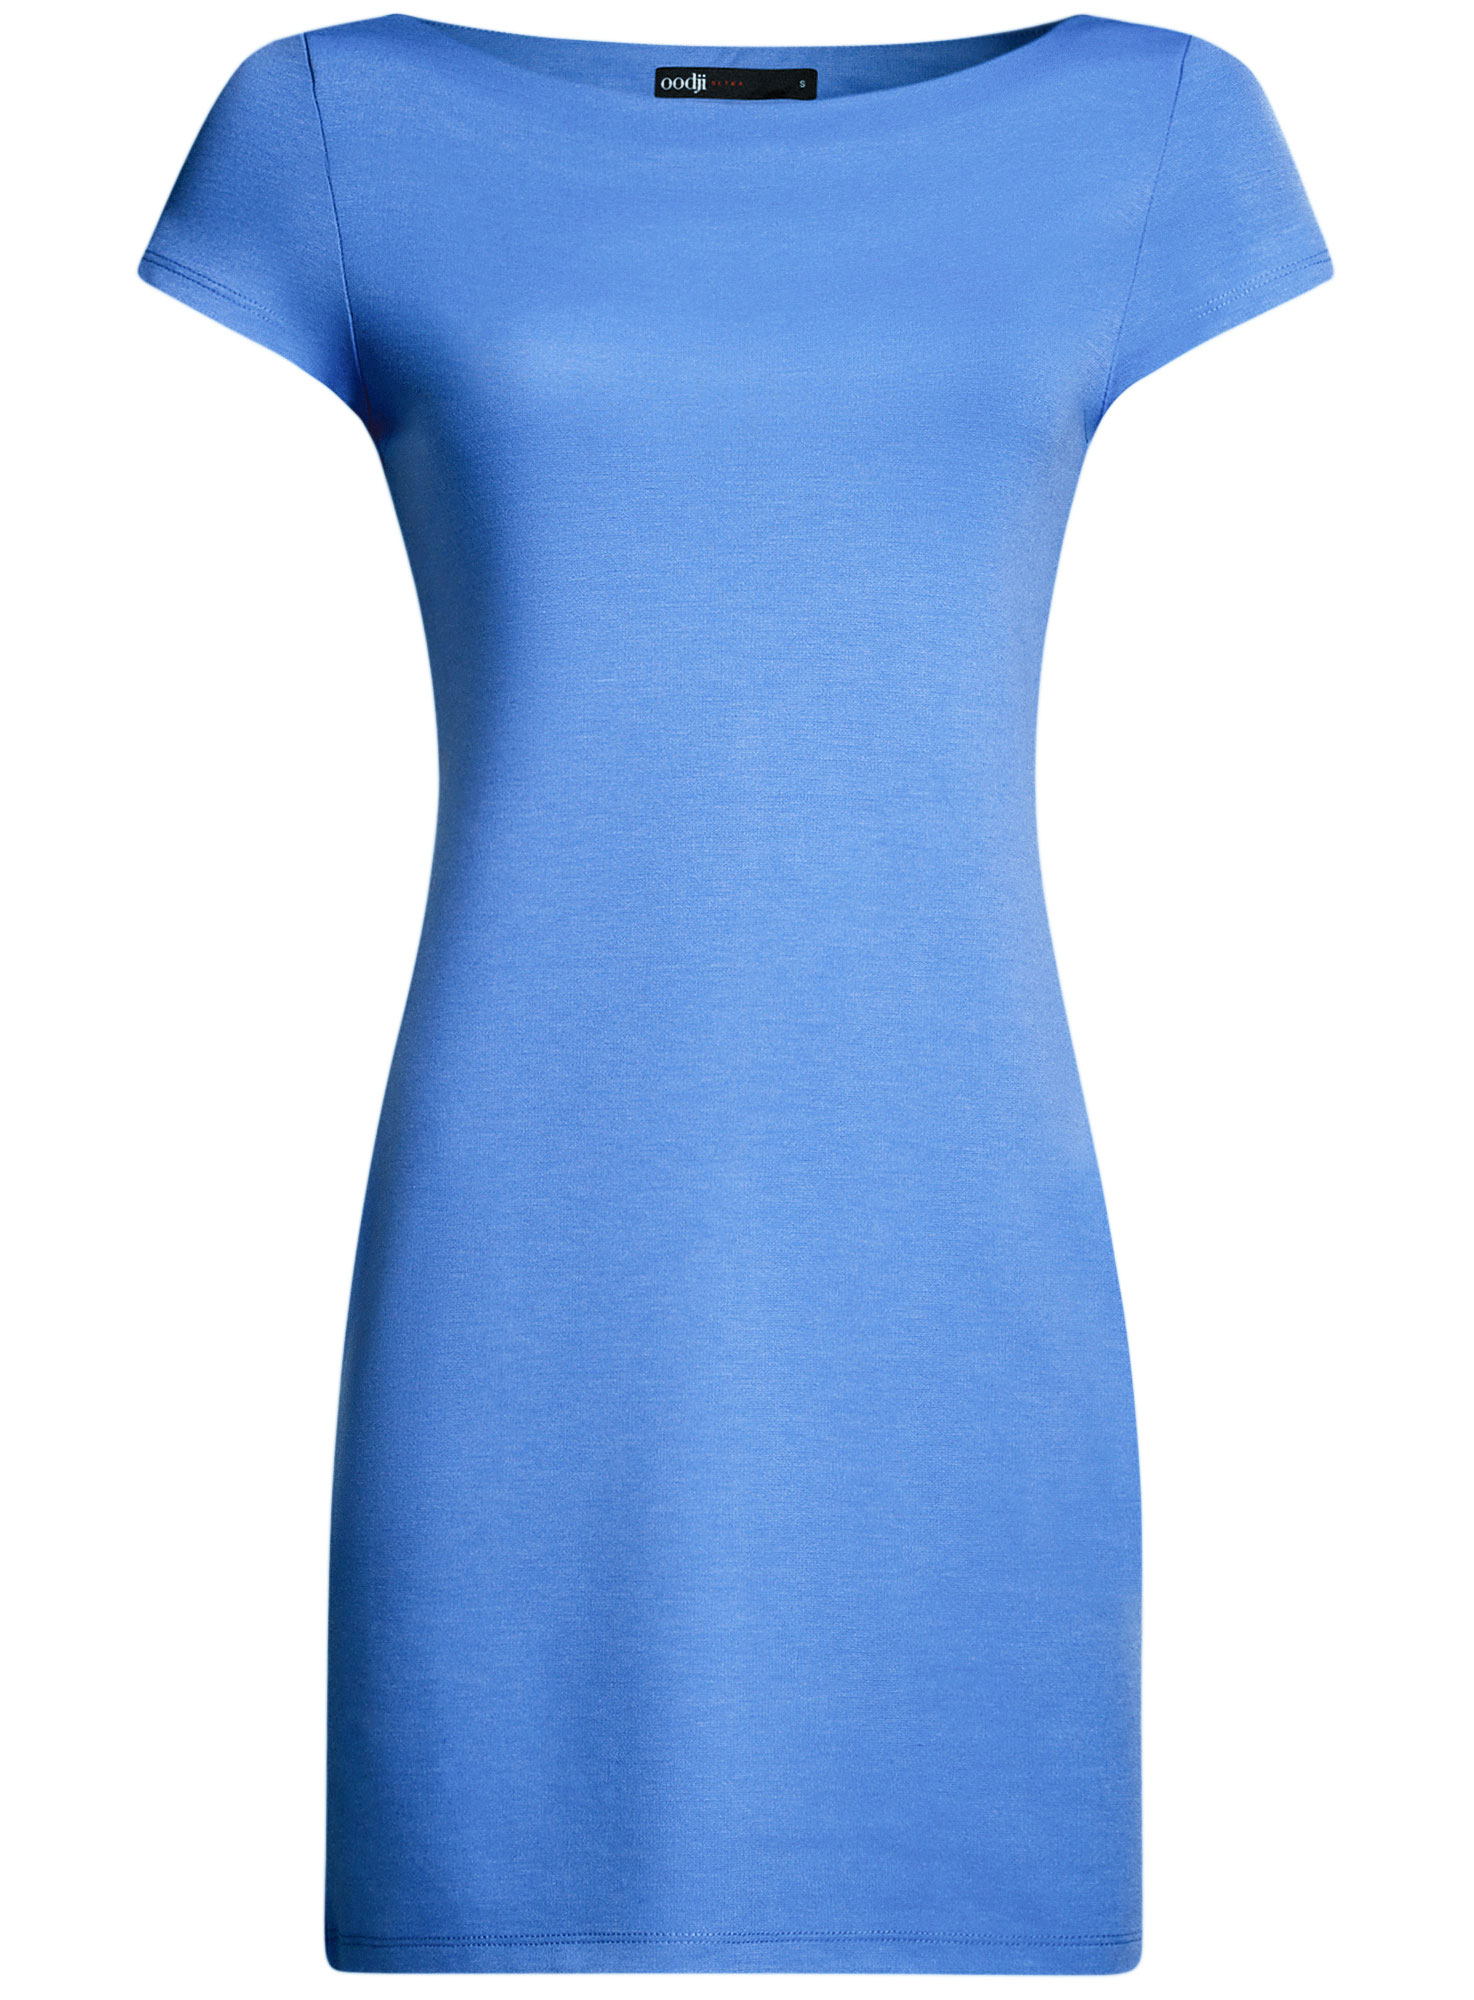 Платье oodji Ultra, цвет: синий. 14001117-2B/16564/7500N. Размер XXS (40)